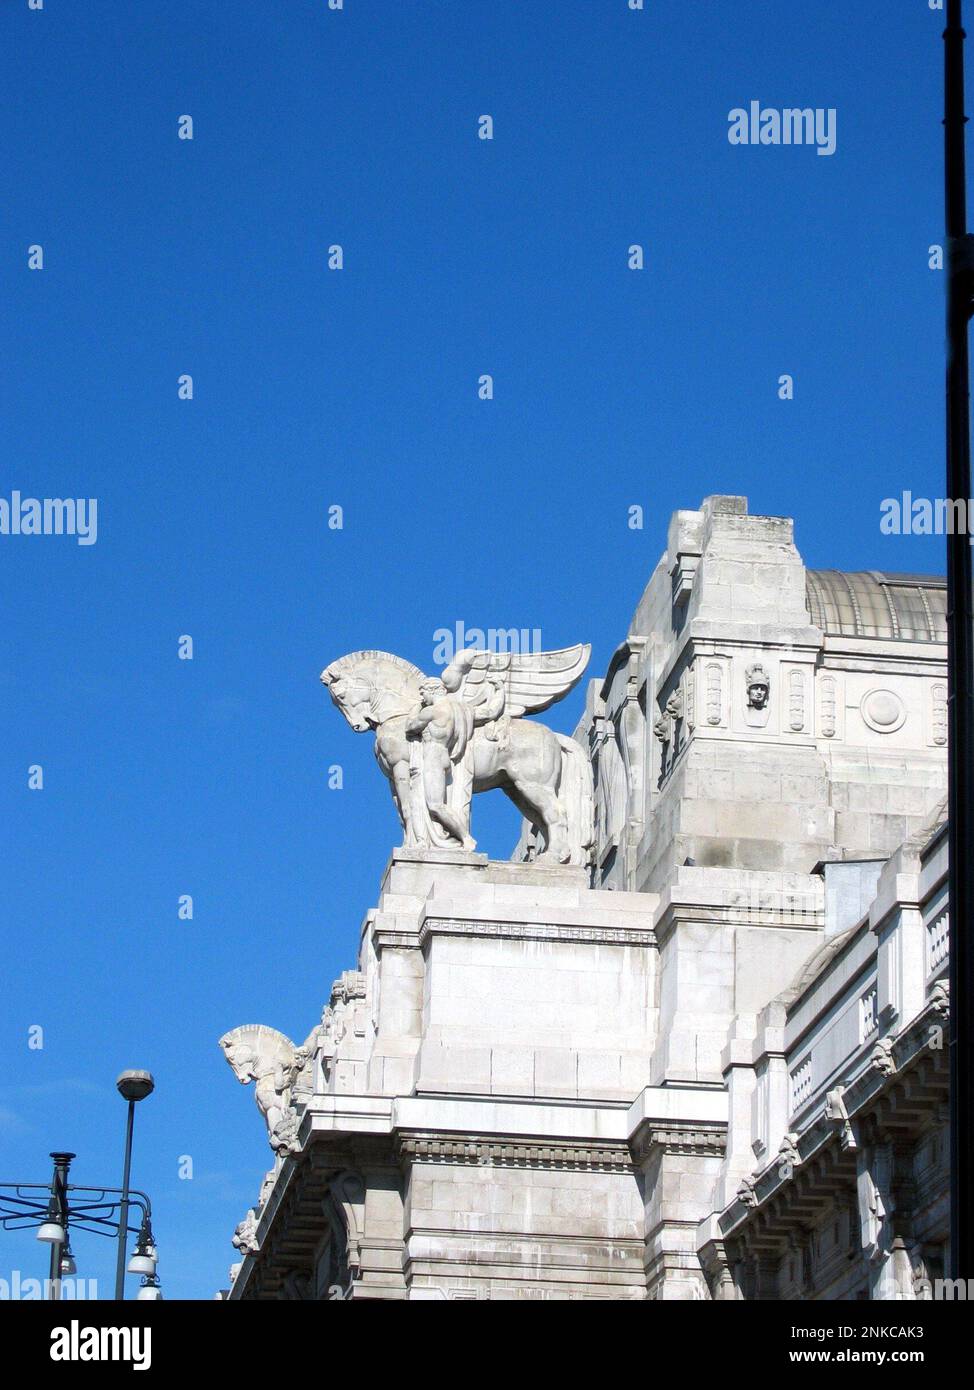 2004 , Milano, Italy : The Stazione Centrale ( Central Rail Station ) - ITALIA - Milan - ART DECO - statue - statua - marble - horse - cavallo - ferroviaria - ferrovia - ferrovie - ARCHITETTURA - ARCHITECTURE --- Photo by Giovanbattista BRAMBILLA ----  Archivio GBB Stock Photo